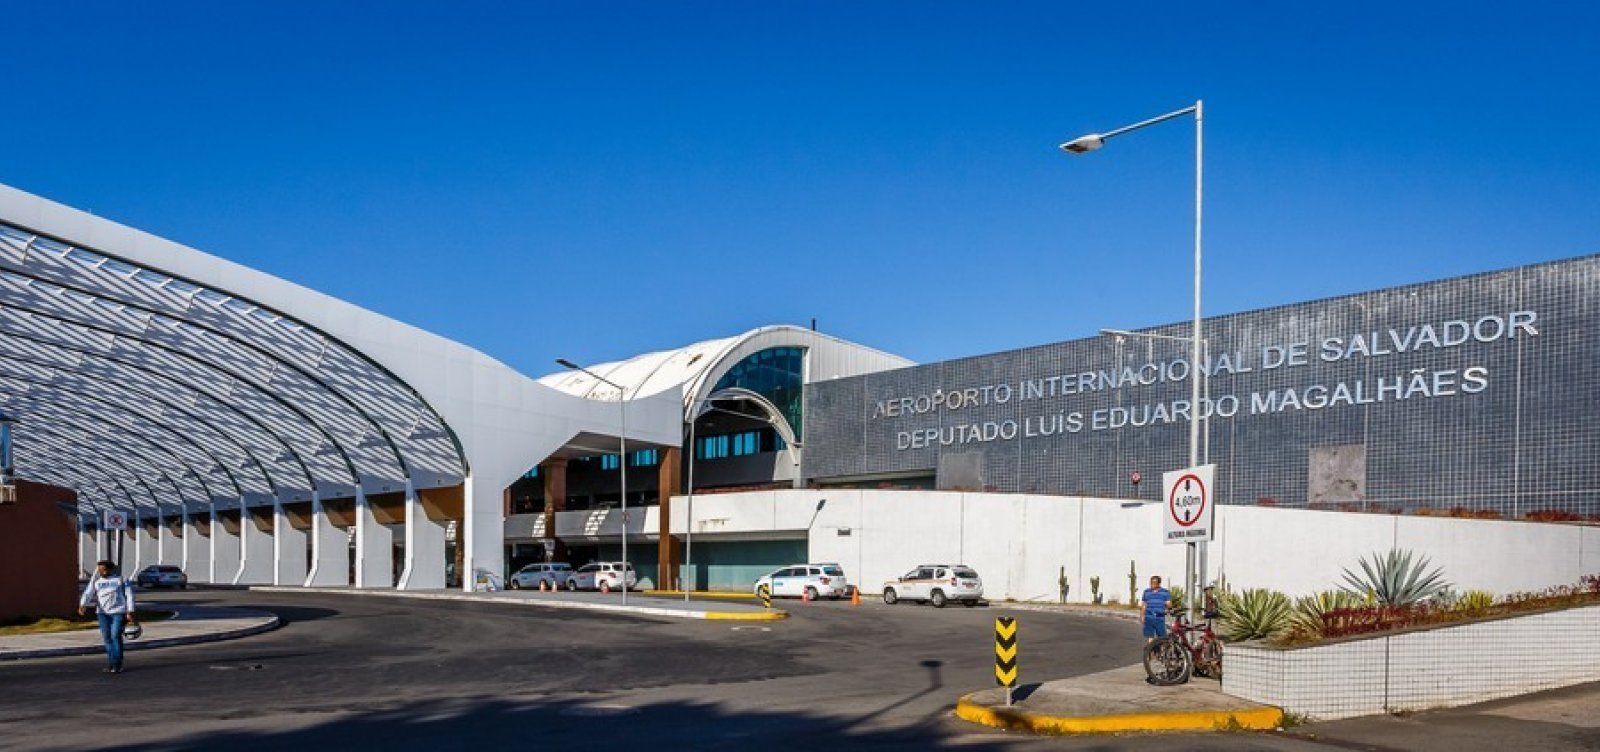 Em reforma, Aeroporto de Salvador terá suspensão parcial de energia elétrica; veja áreas afetadas